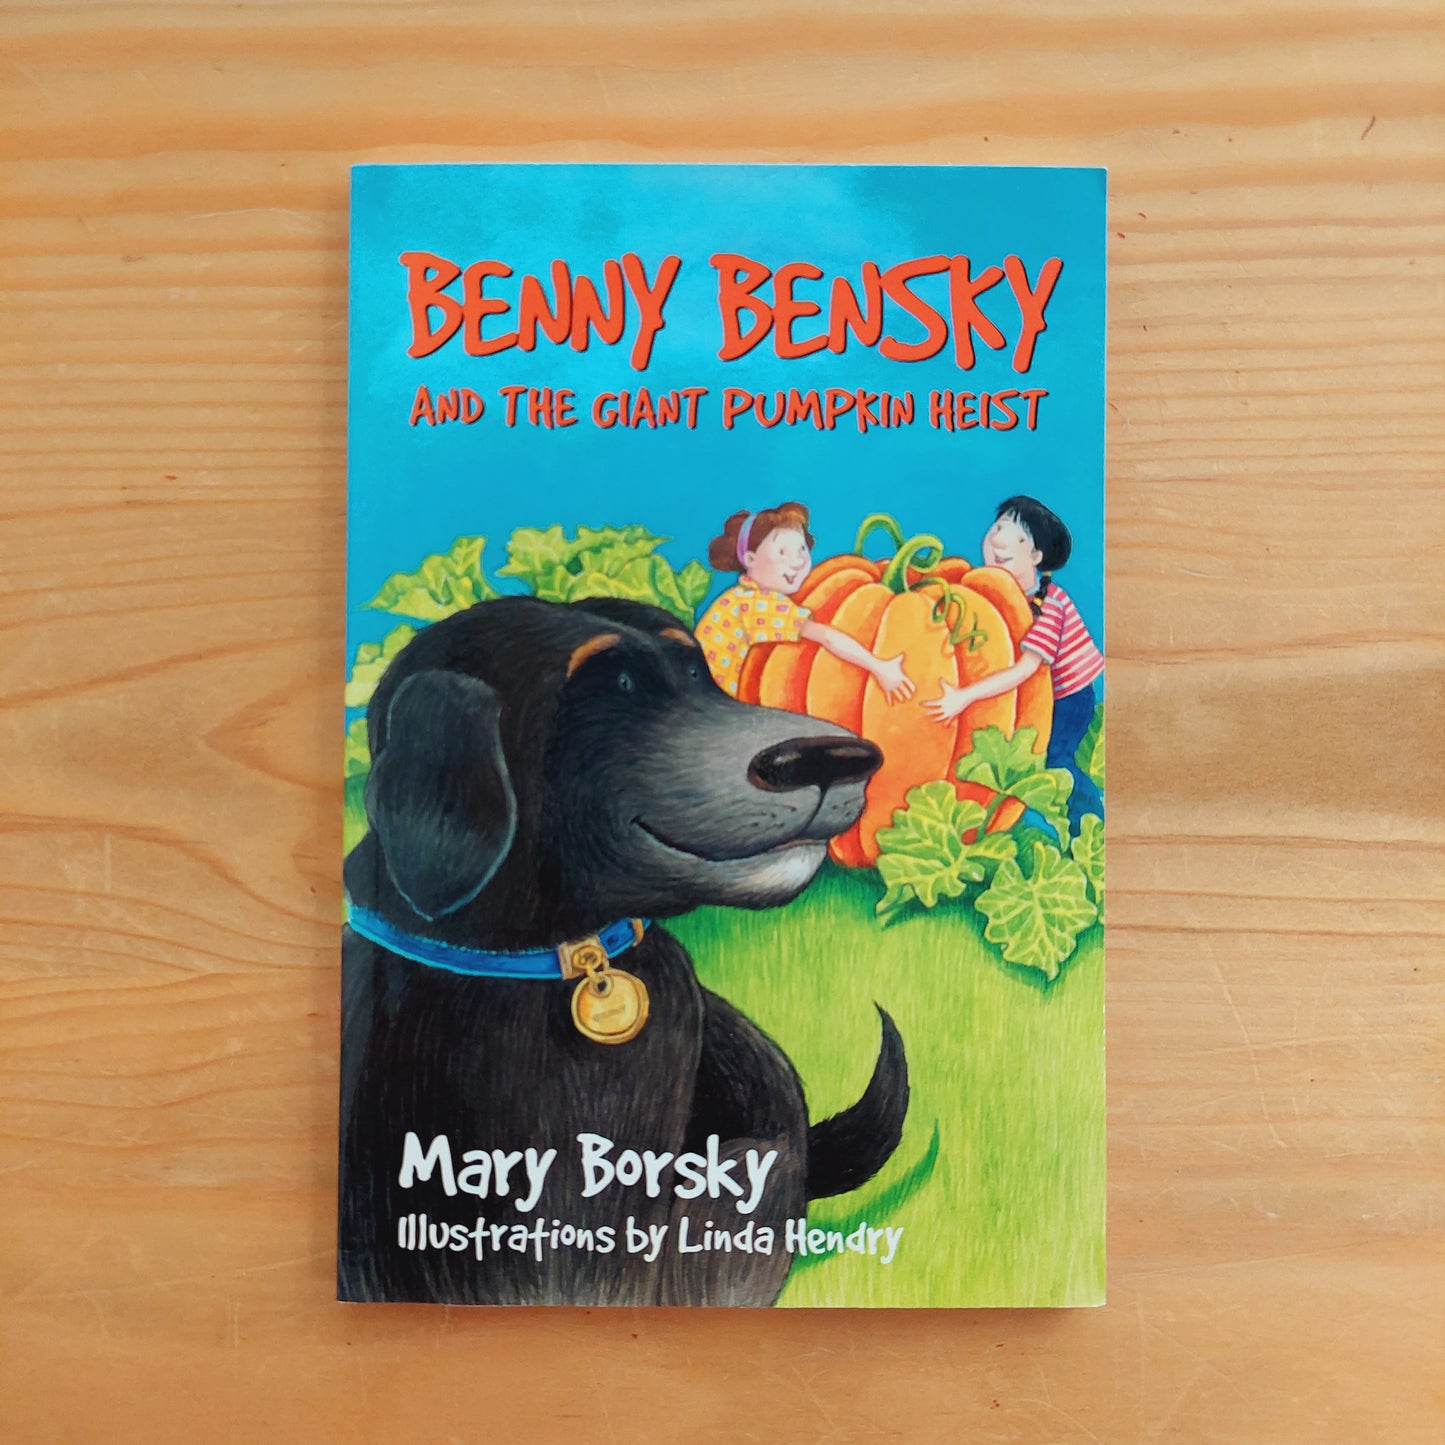 Benny Bensky and the Giant Pumpkin Heist